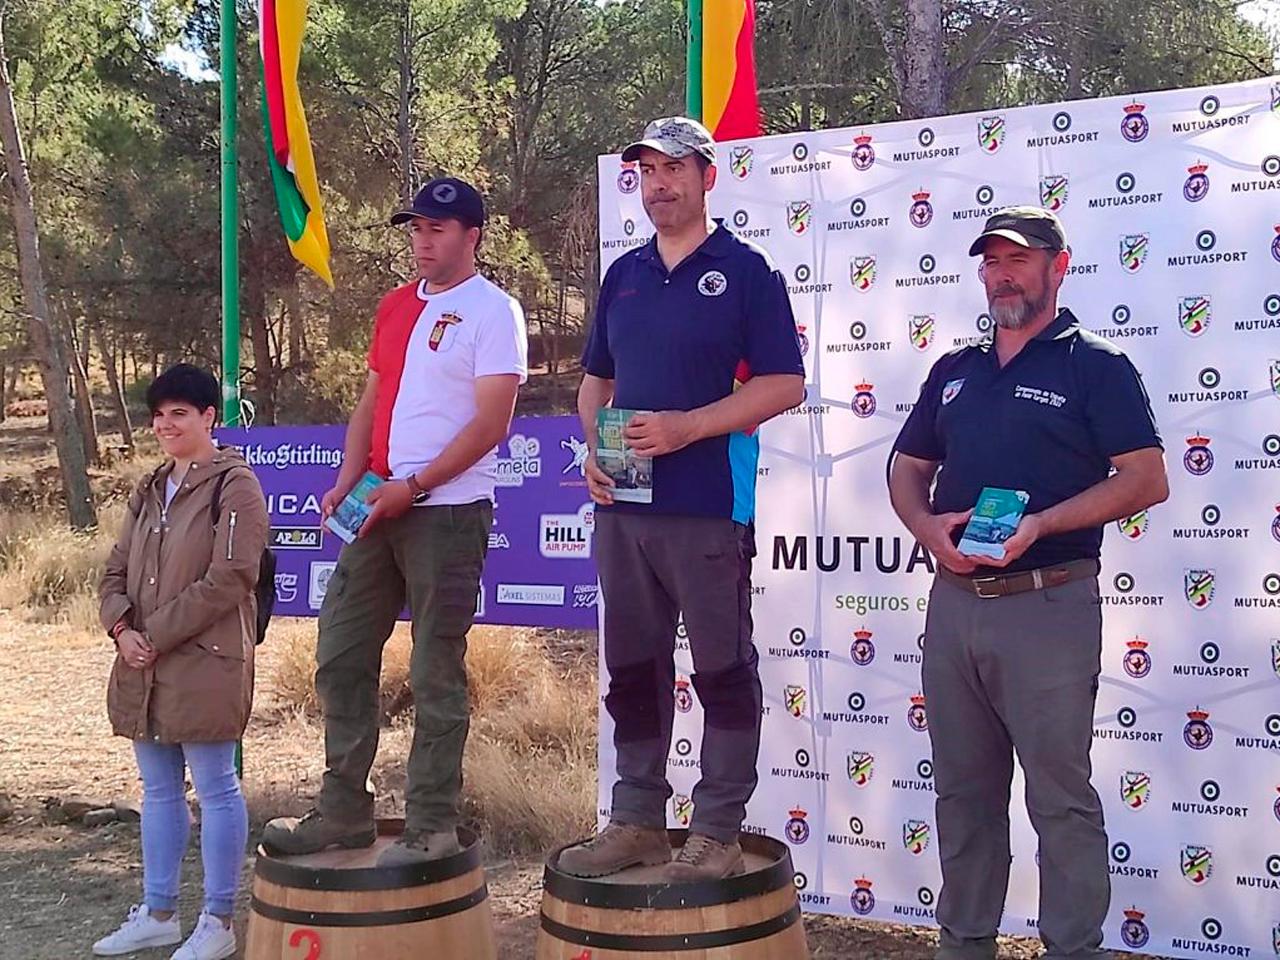 Nuestro representante madrileño Emilio Palomares (Pistón) se proclama campeón de España de Field Target